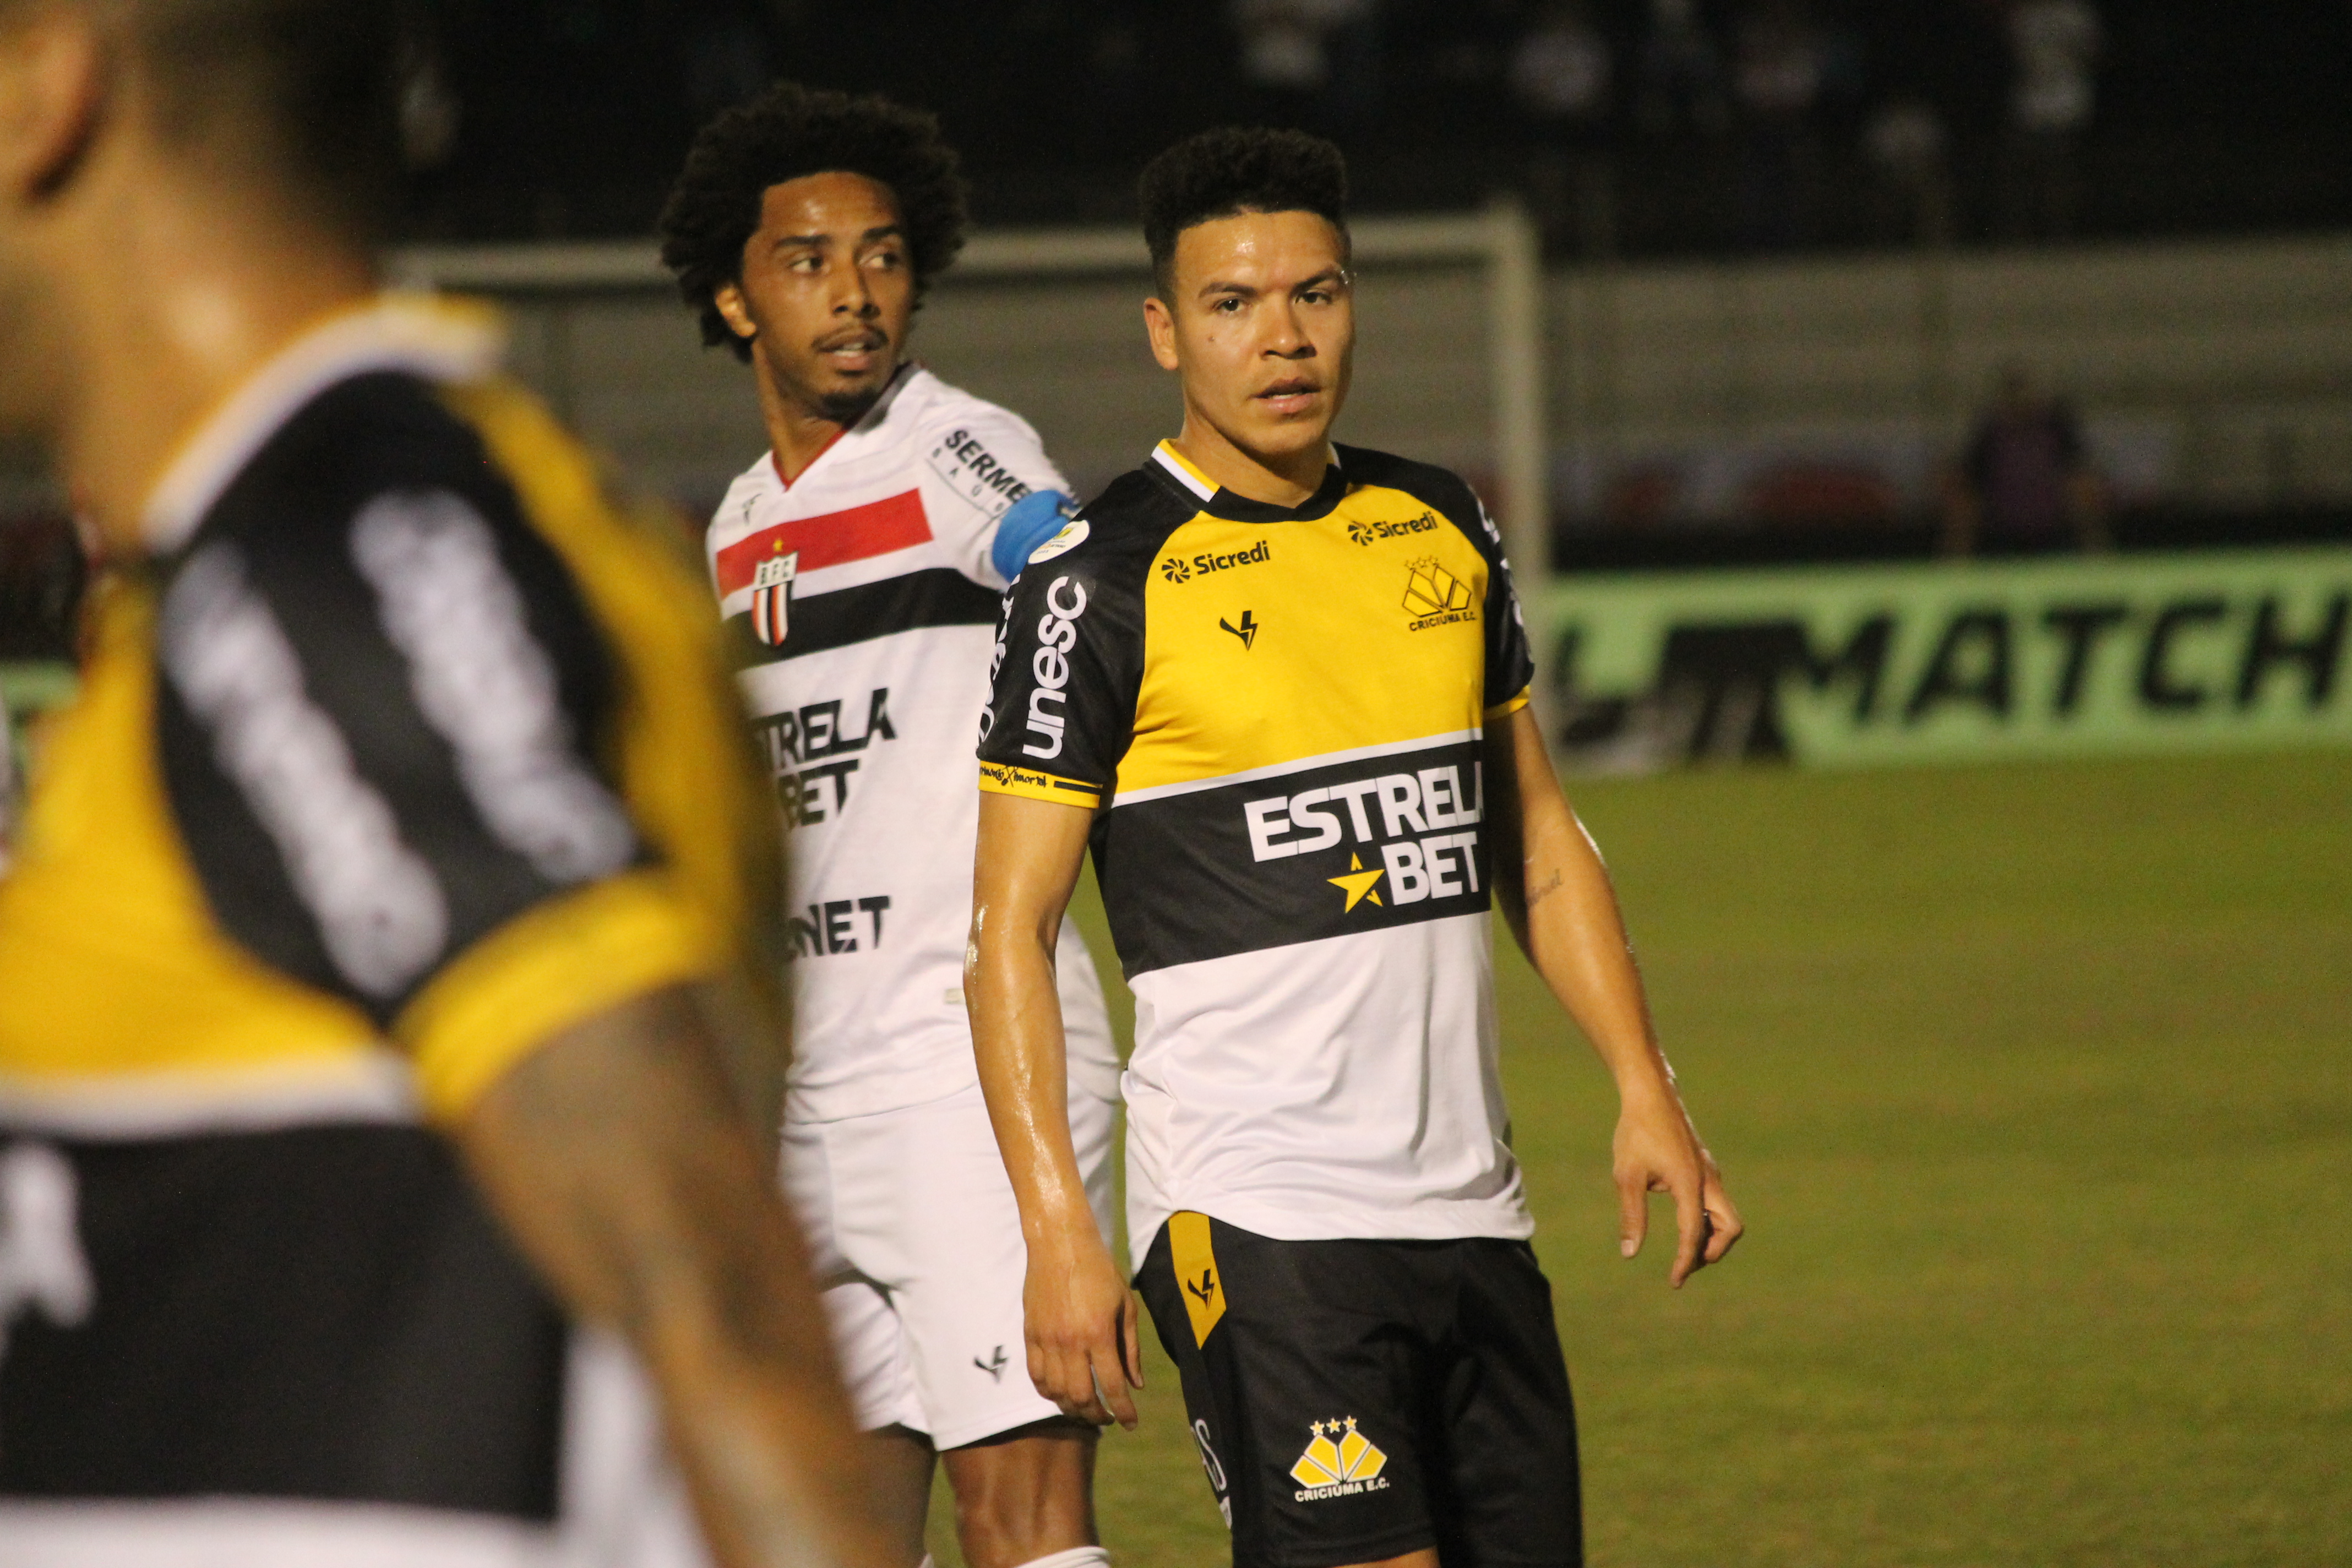 Botafogo-SP 1 x 0 Criciúma: confira os detalhes da partida - Esporte - 4oito